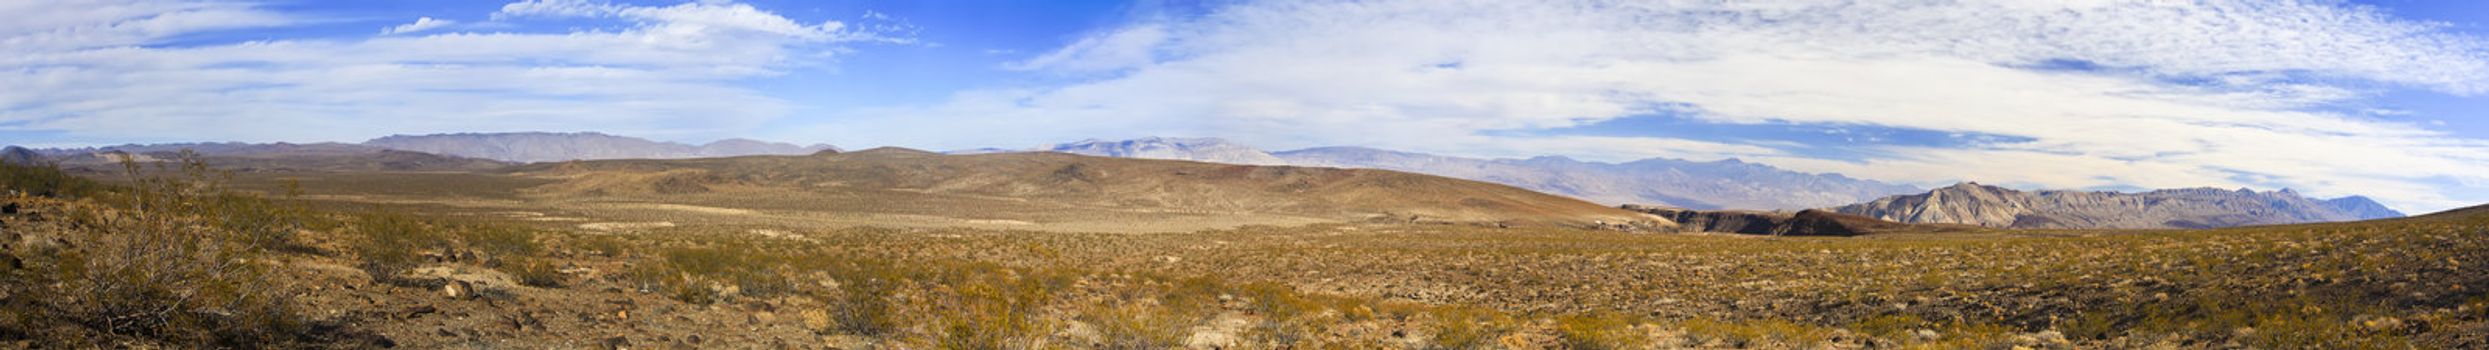 Panoramic of Nevada desert